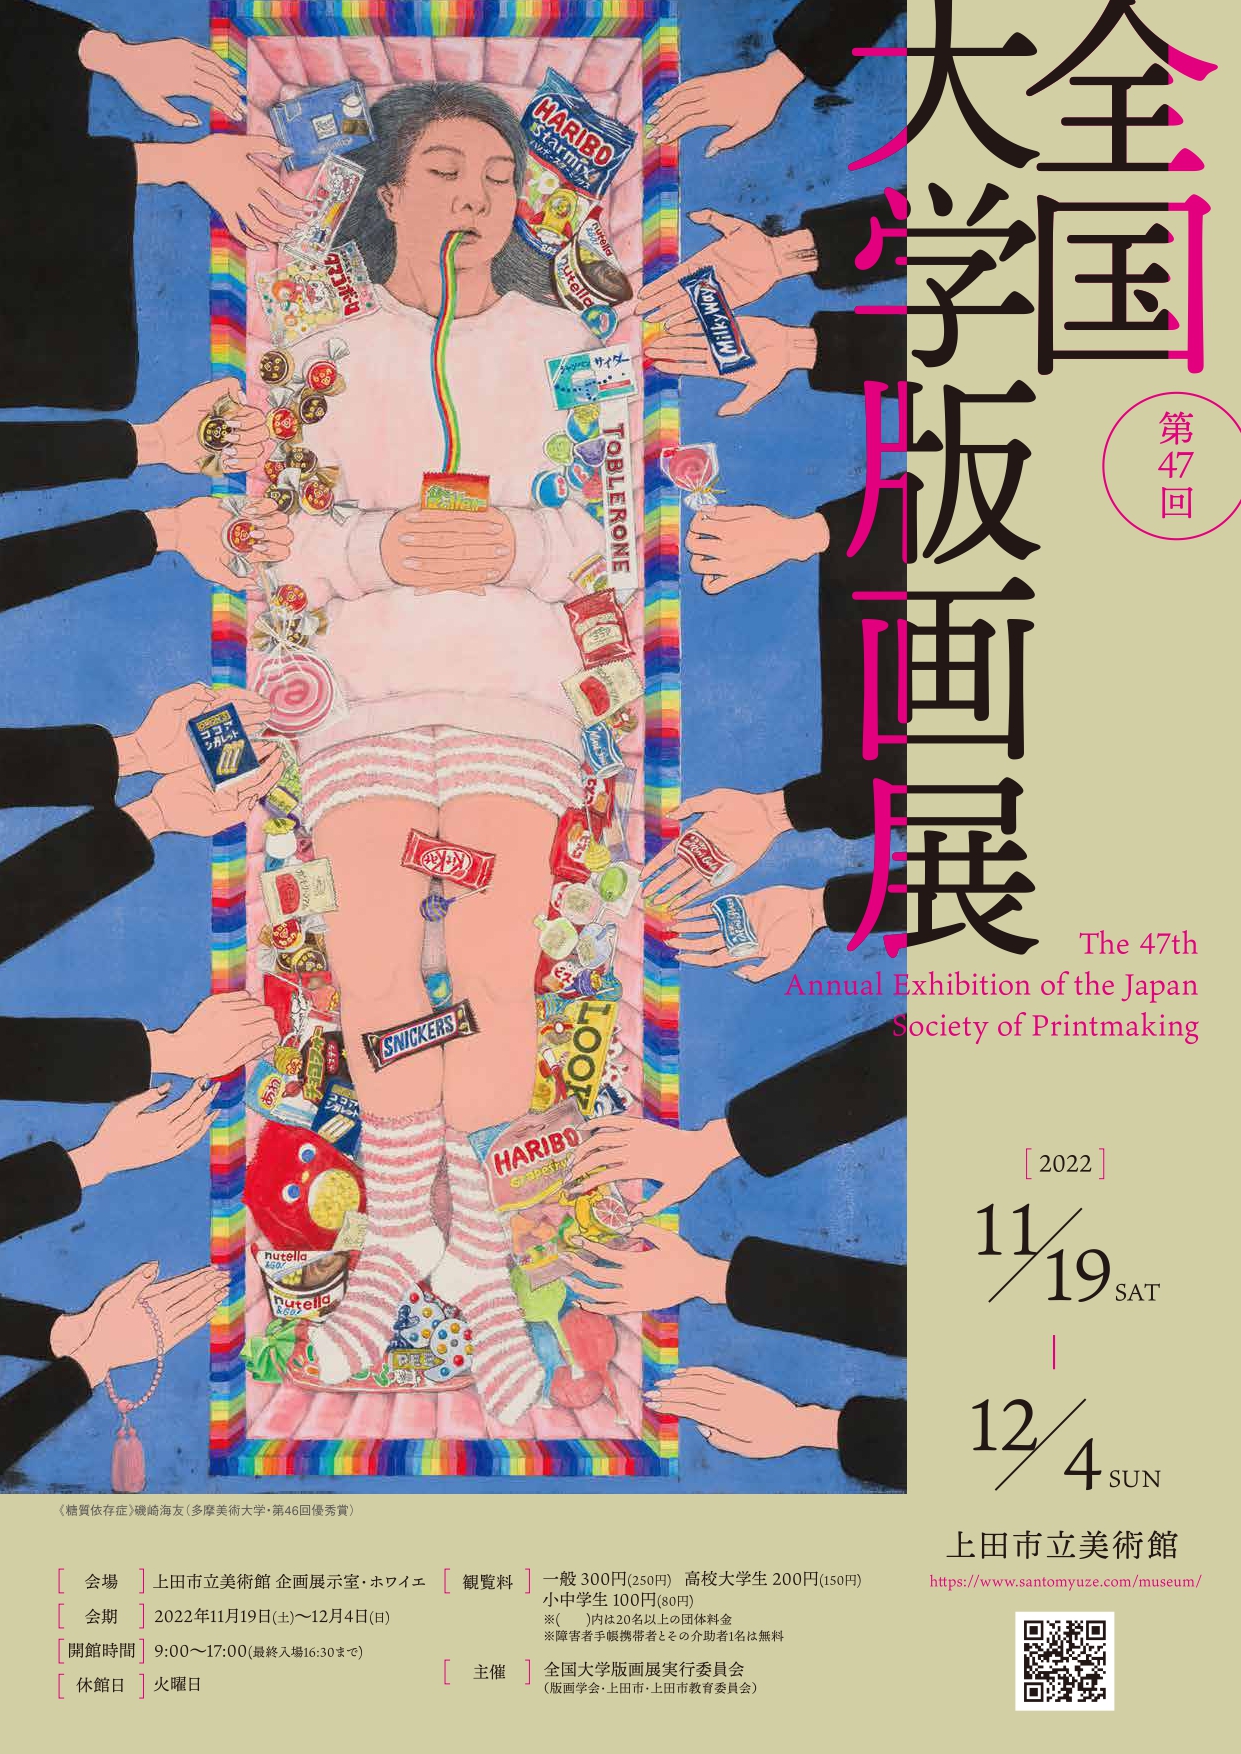 ポスター掲載作品は、昨年度「優秀賞」受賞した磯崎海友さんの作品です。